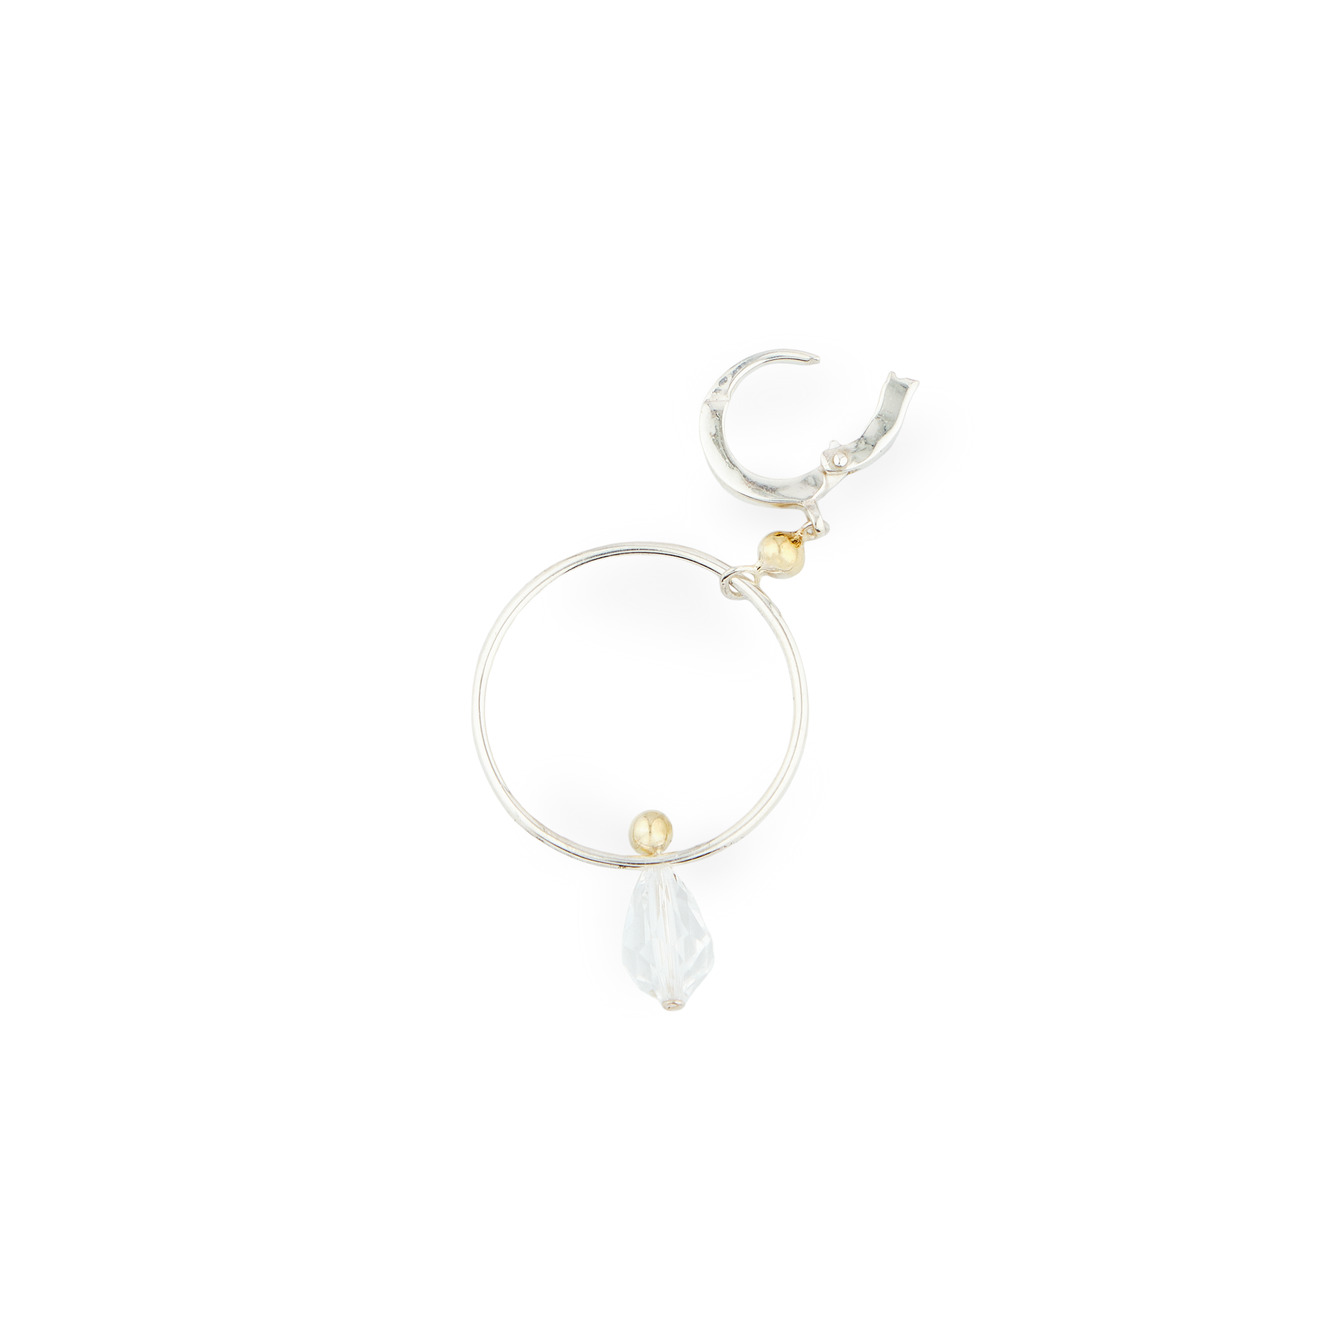 УРА jewelry Моносерьга из серебра с кристаллами сваровски opus jewelry моносерьга из серебра net cross earring с топазом